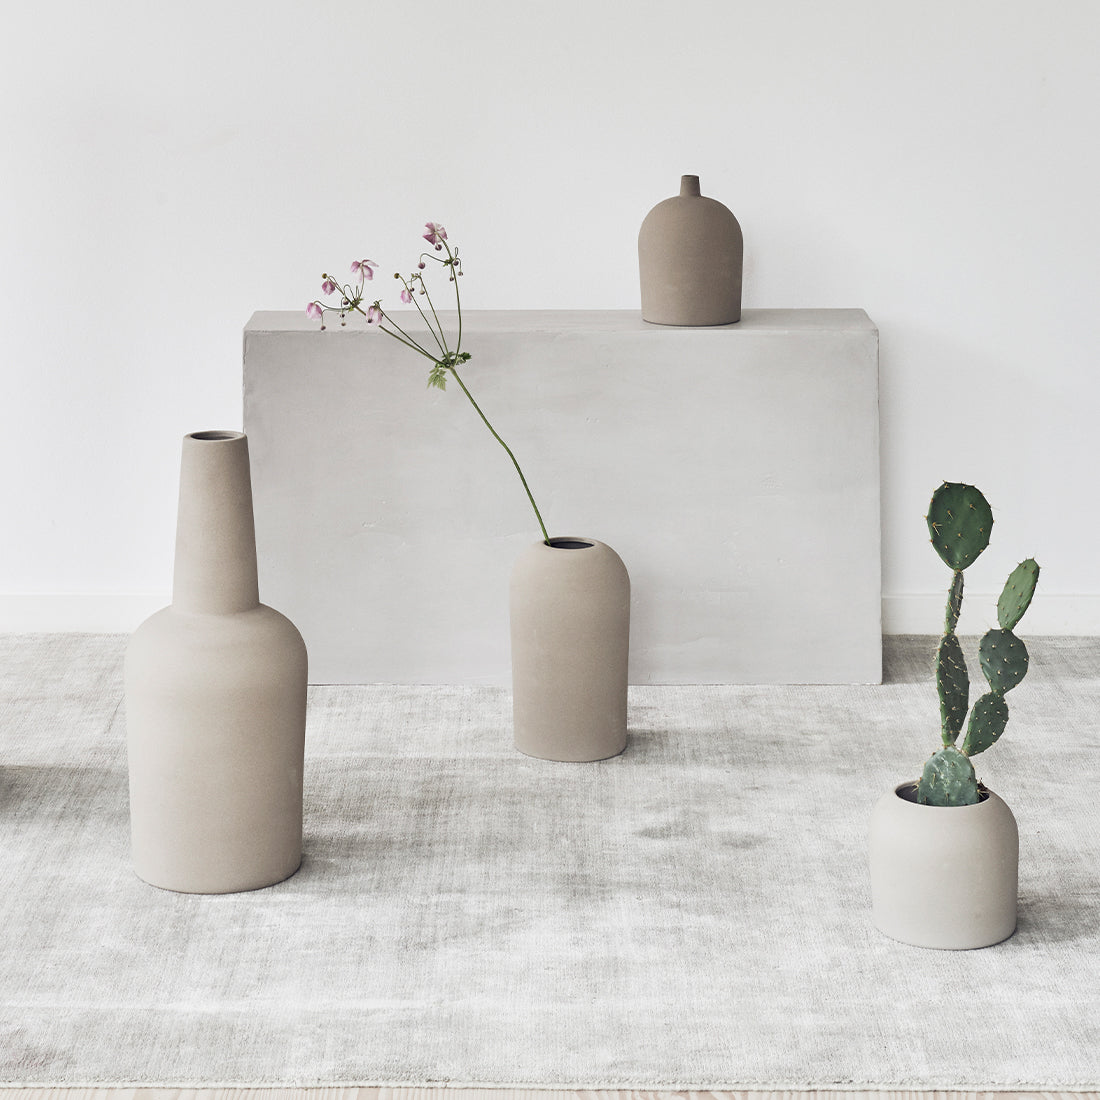 Dome Vase - Medium, Terracotta